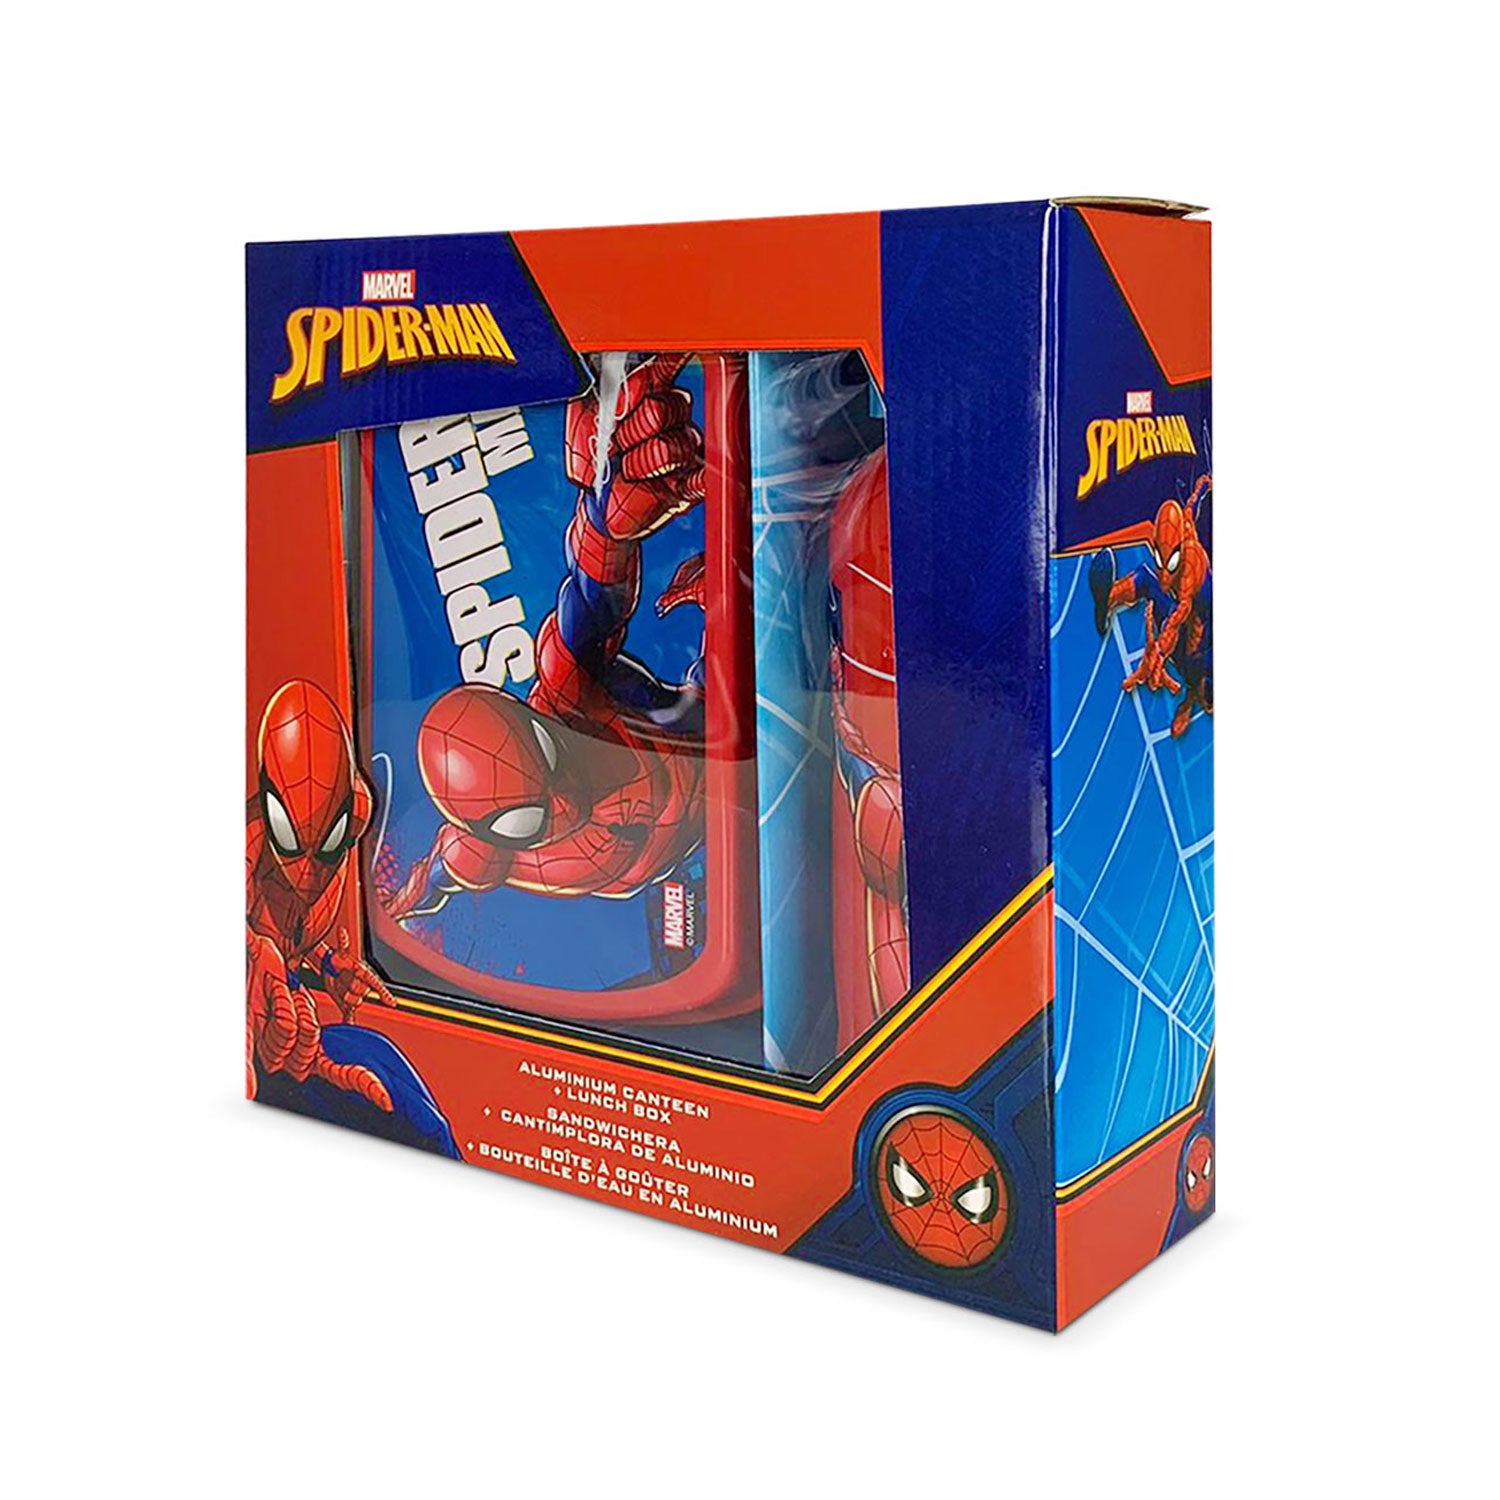 Set pranzo 2 pezzi Marvel Spiderman ufficiale borraccia 500ml e portapranzo 5384